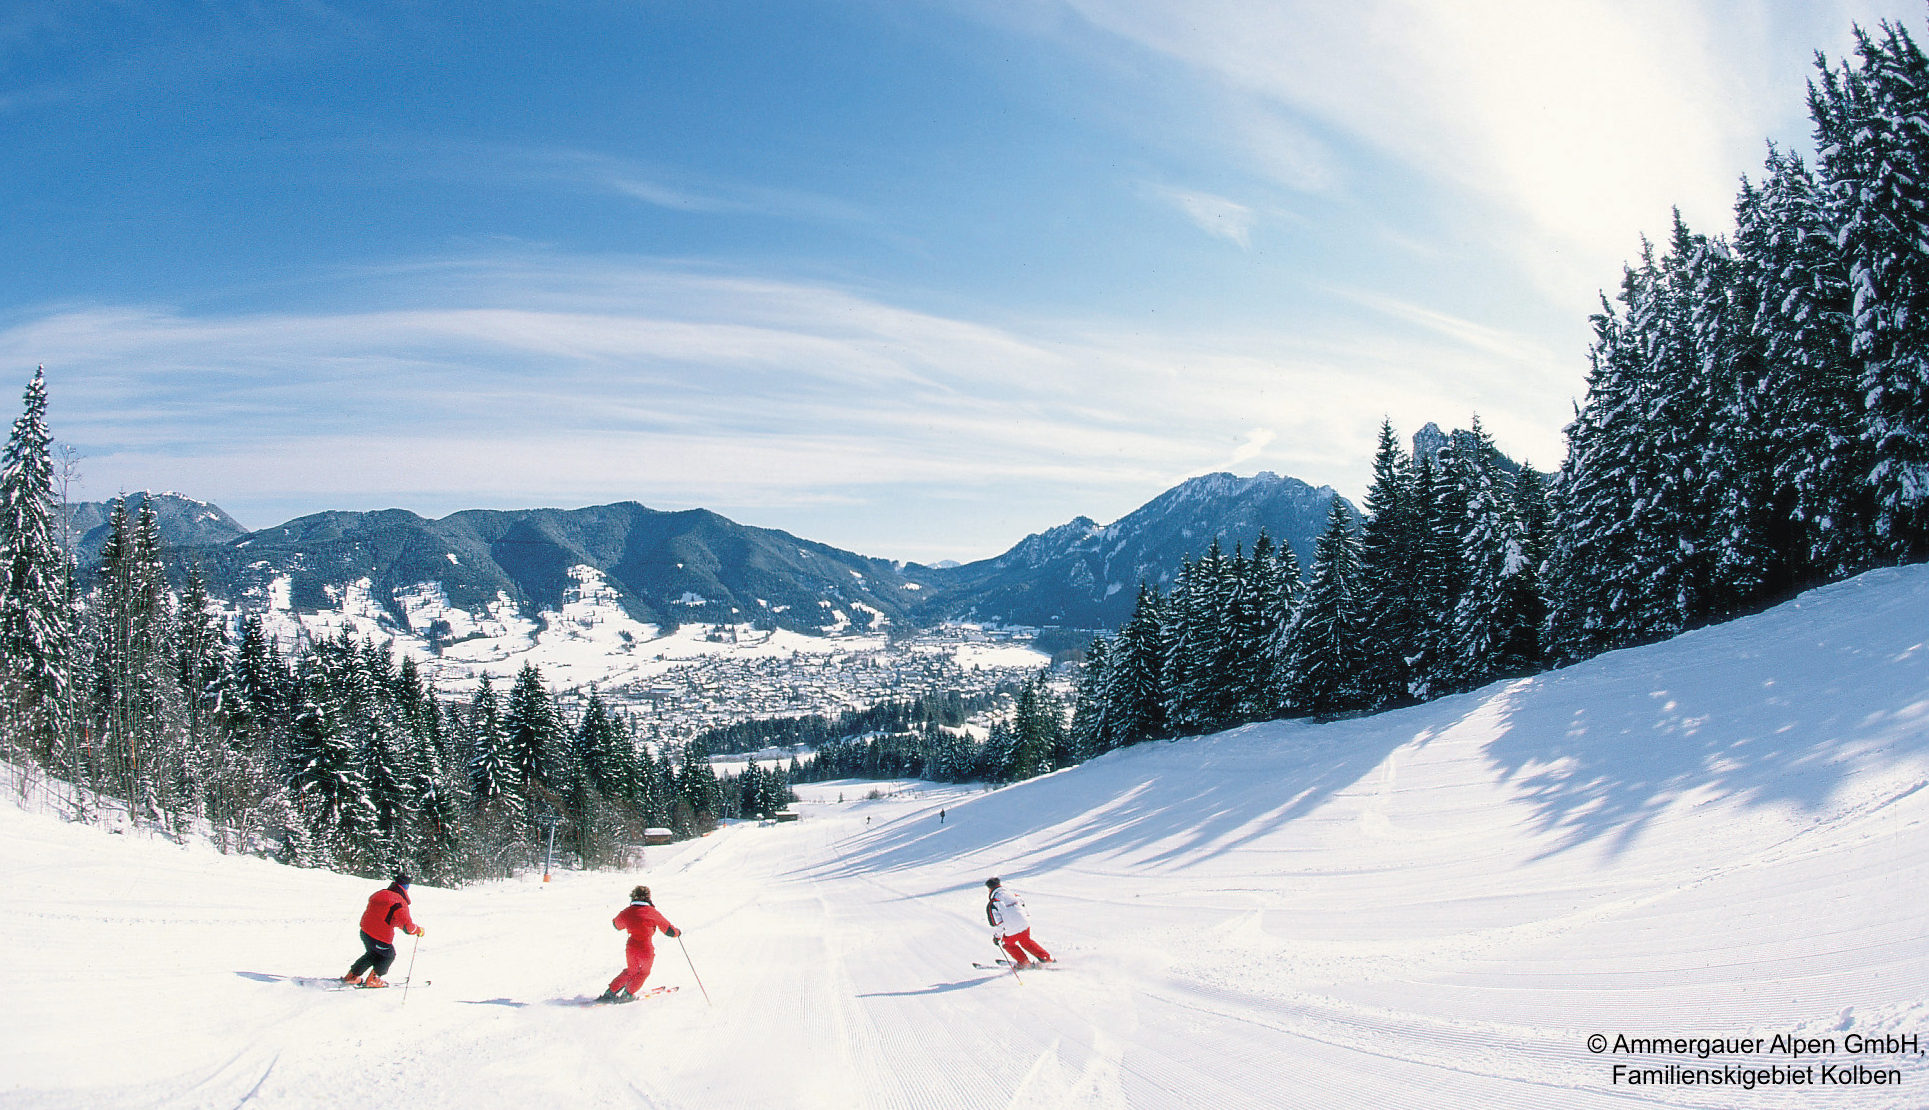 Alps ski skiing. Oberammergau Ski. Альпы лыжи. Алтайские Альпы. Simulcam Alp Skiing.